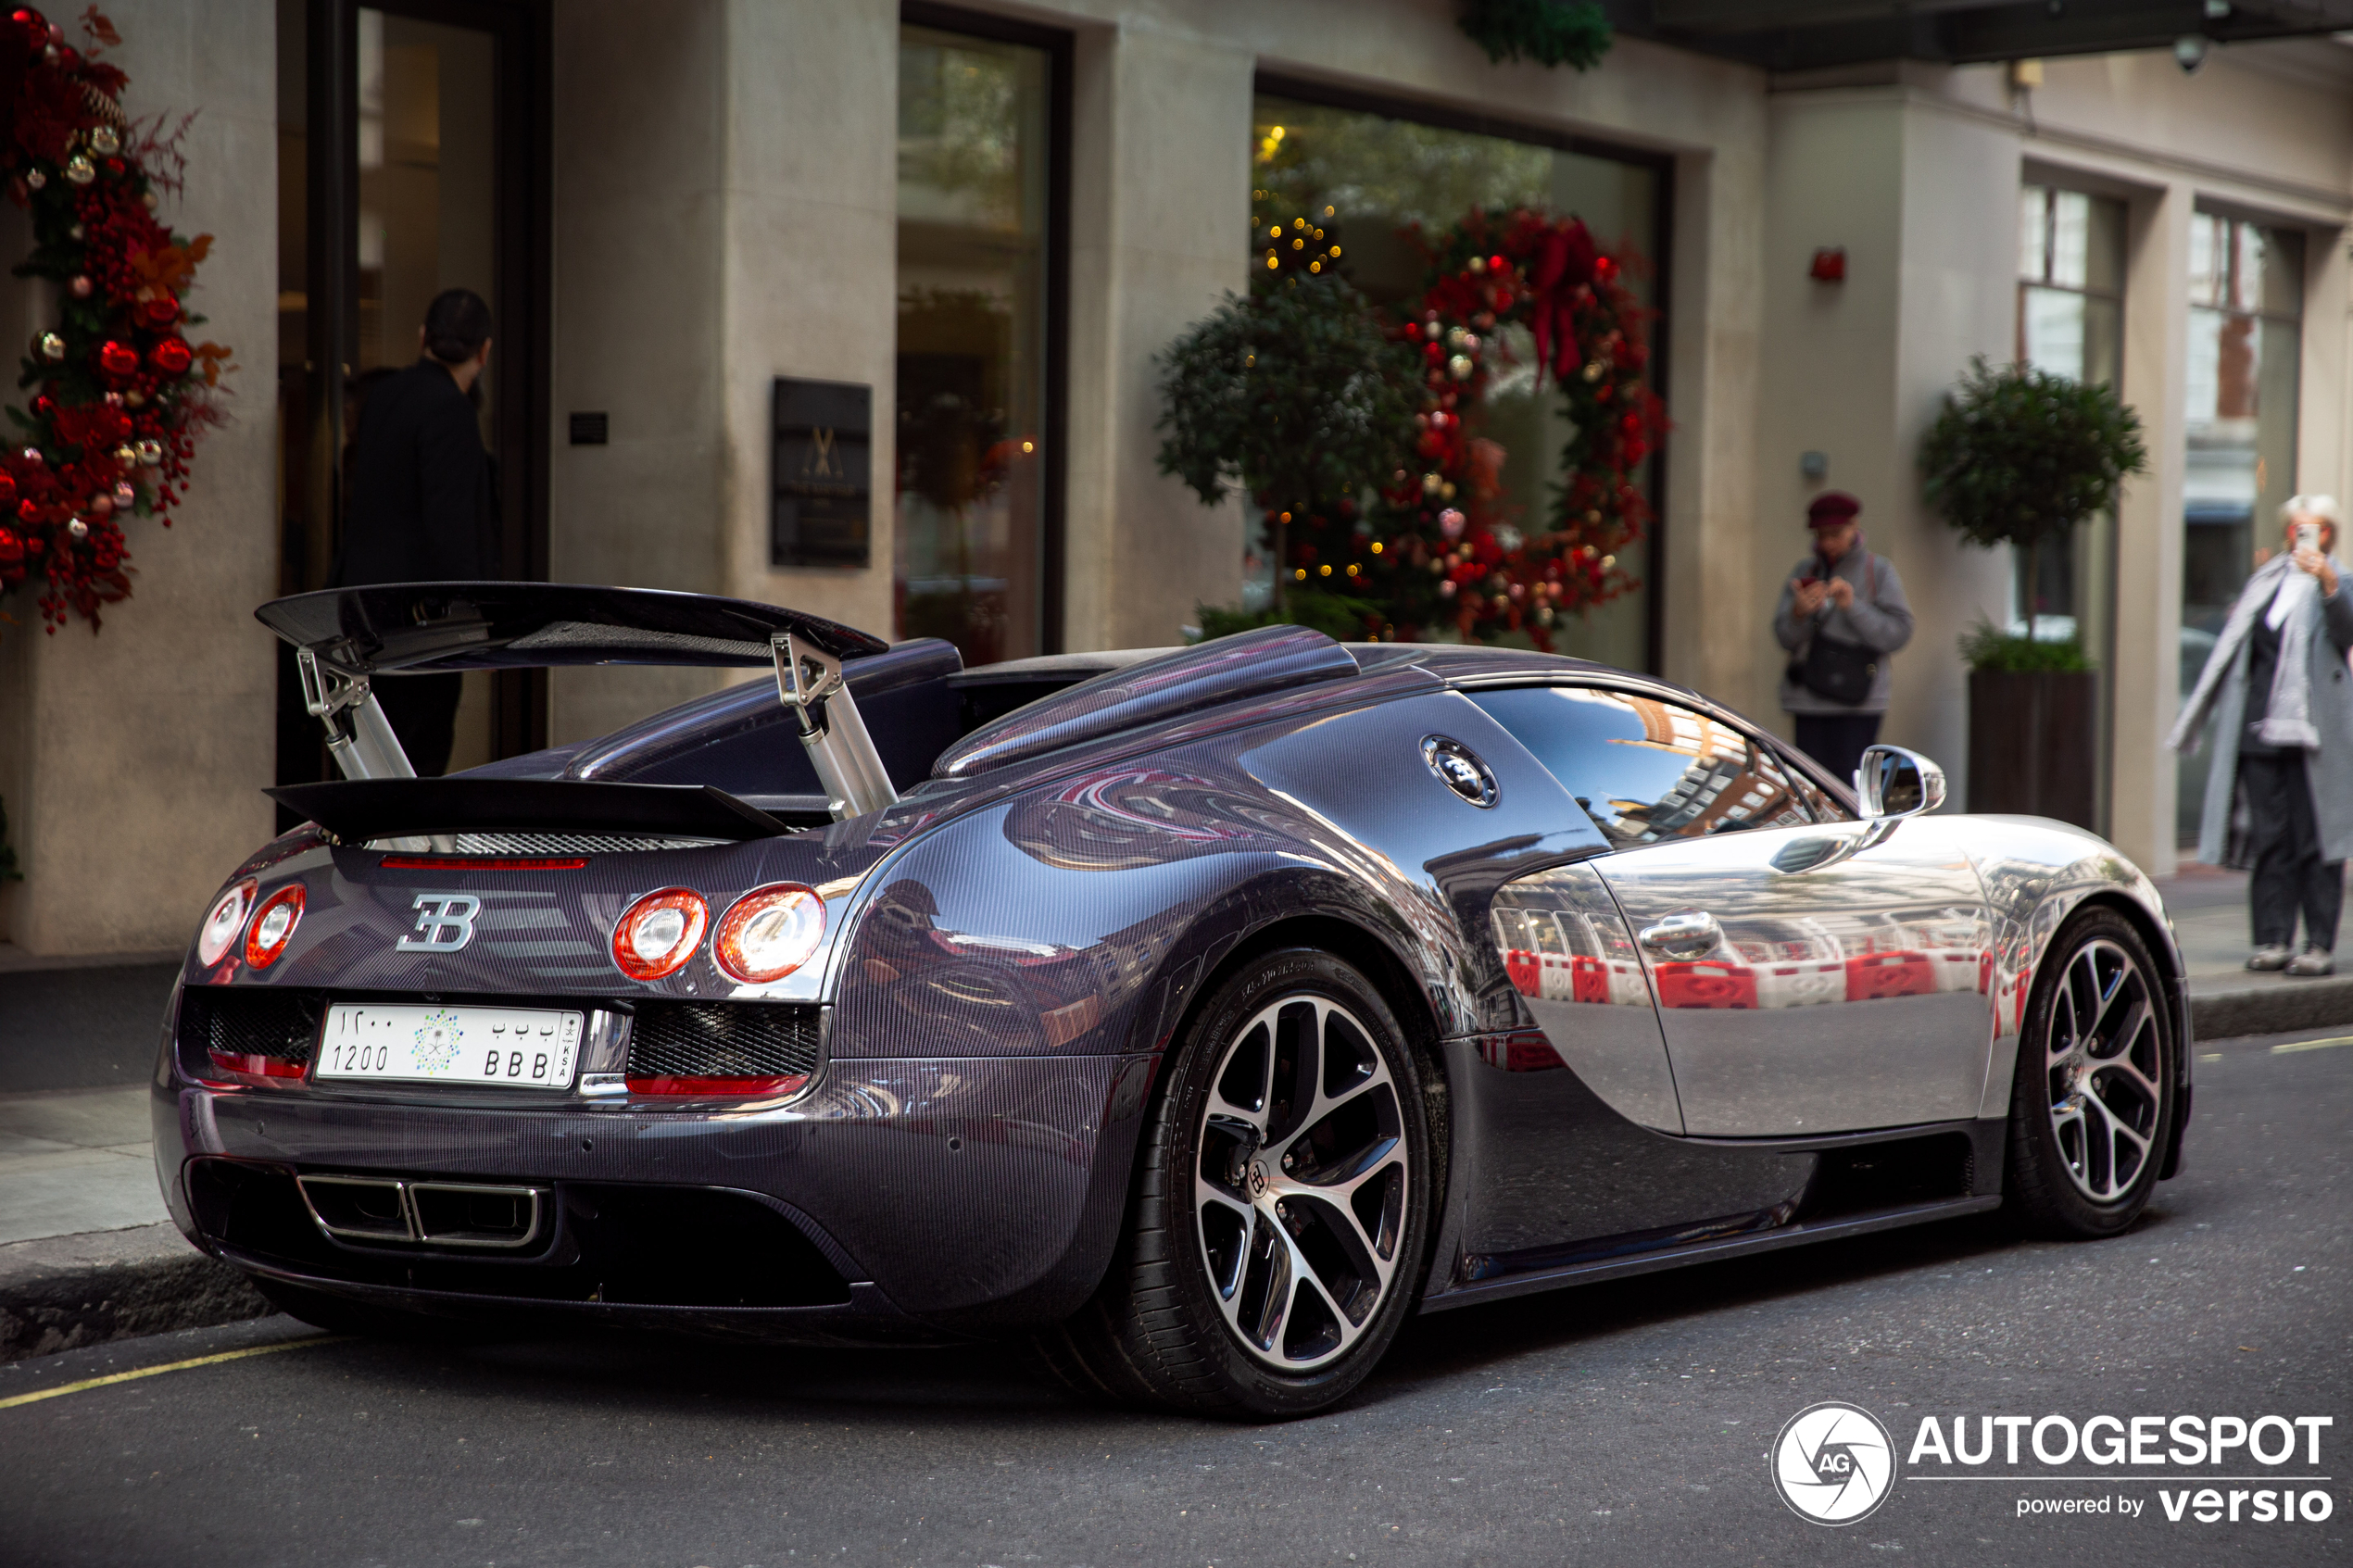 Po prvi put sada možemo da vidimo ovaj Veyron u Londonu.